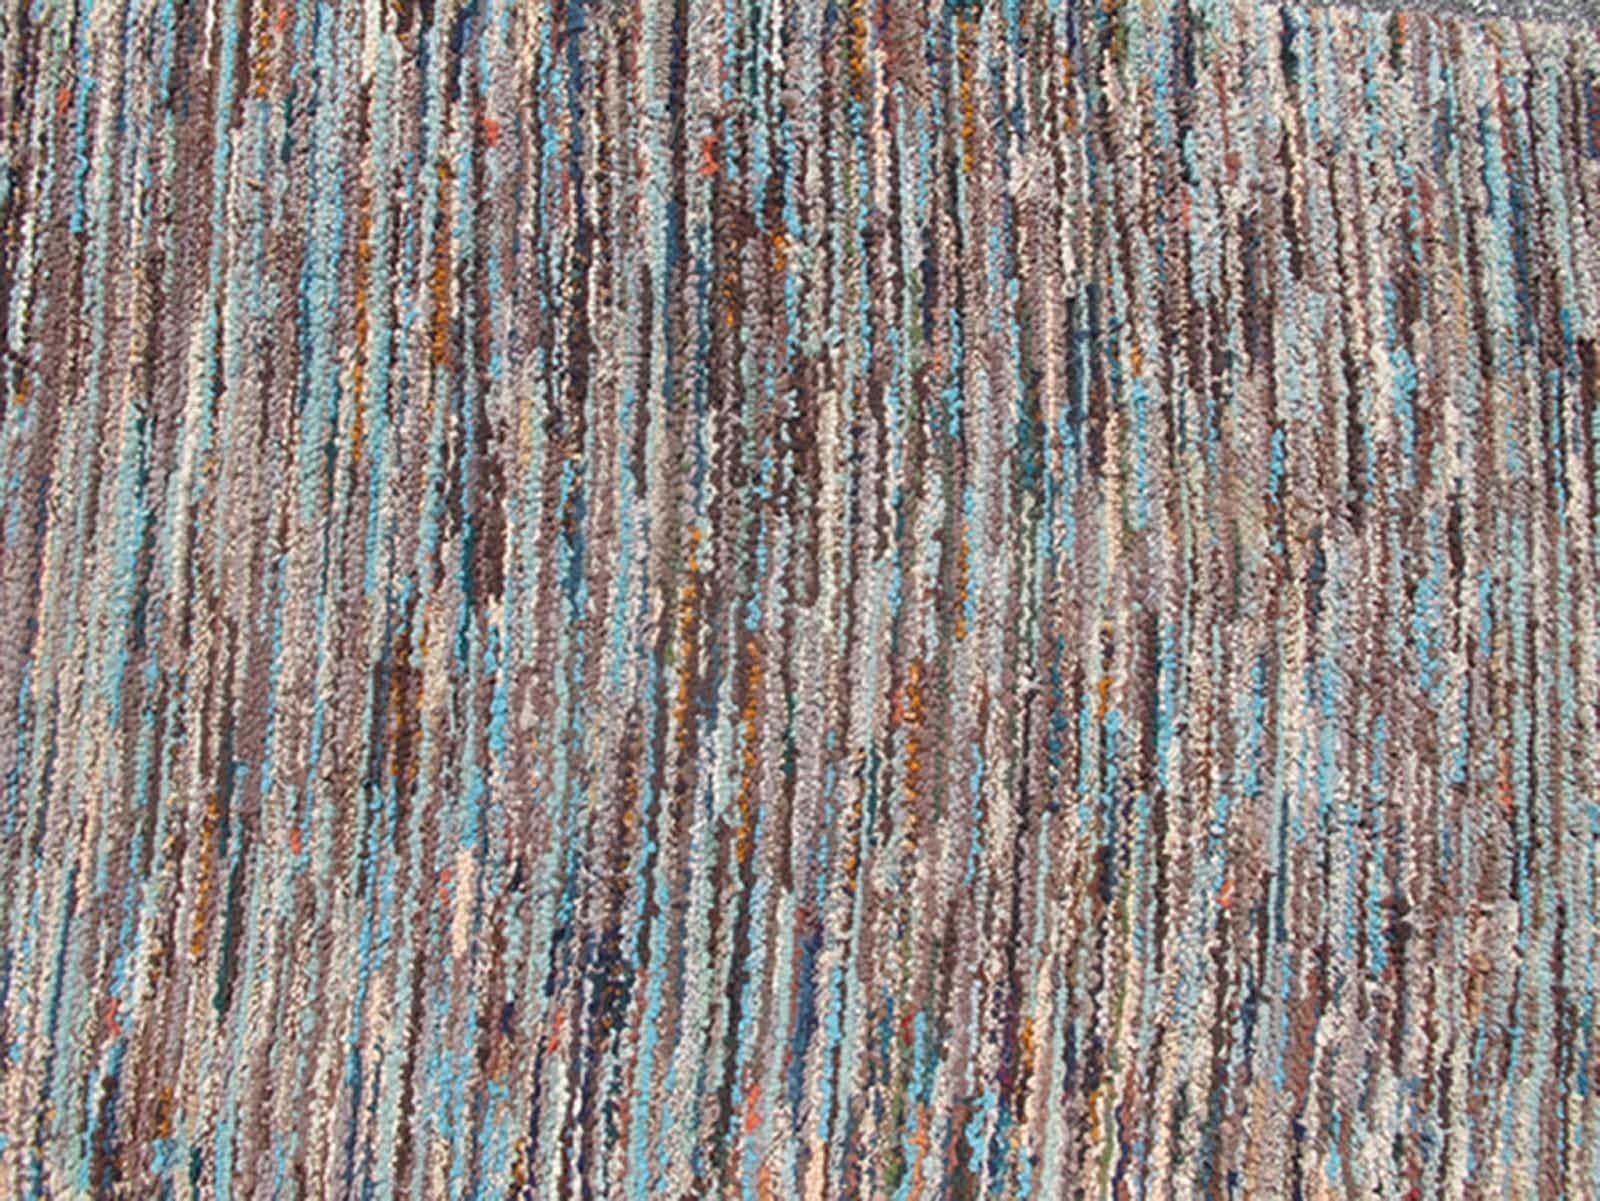 Antiker Hakenläufer mit buntem Muster, Teppich l11-0904, Herkunftsland / Art: Vereinigte Staaten / Gehakt, um 1920.

Dieser antike Läufer hat ein buntes Streifendesign. Der Teppich wurde mit einem Haken gewebt, und die Vielfalt der Farben verleiht